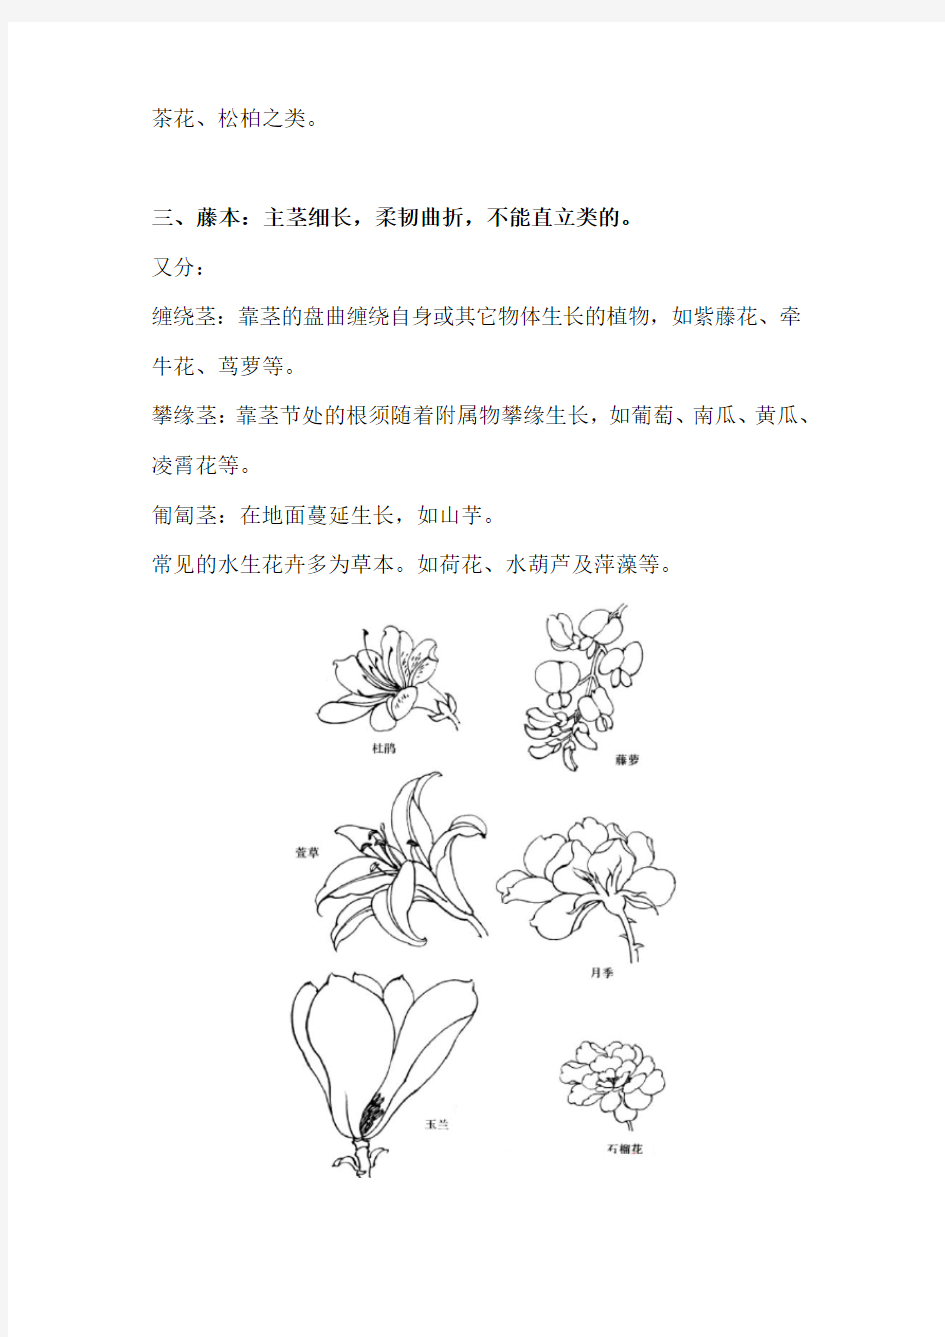 国画白描花卉类别及结构